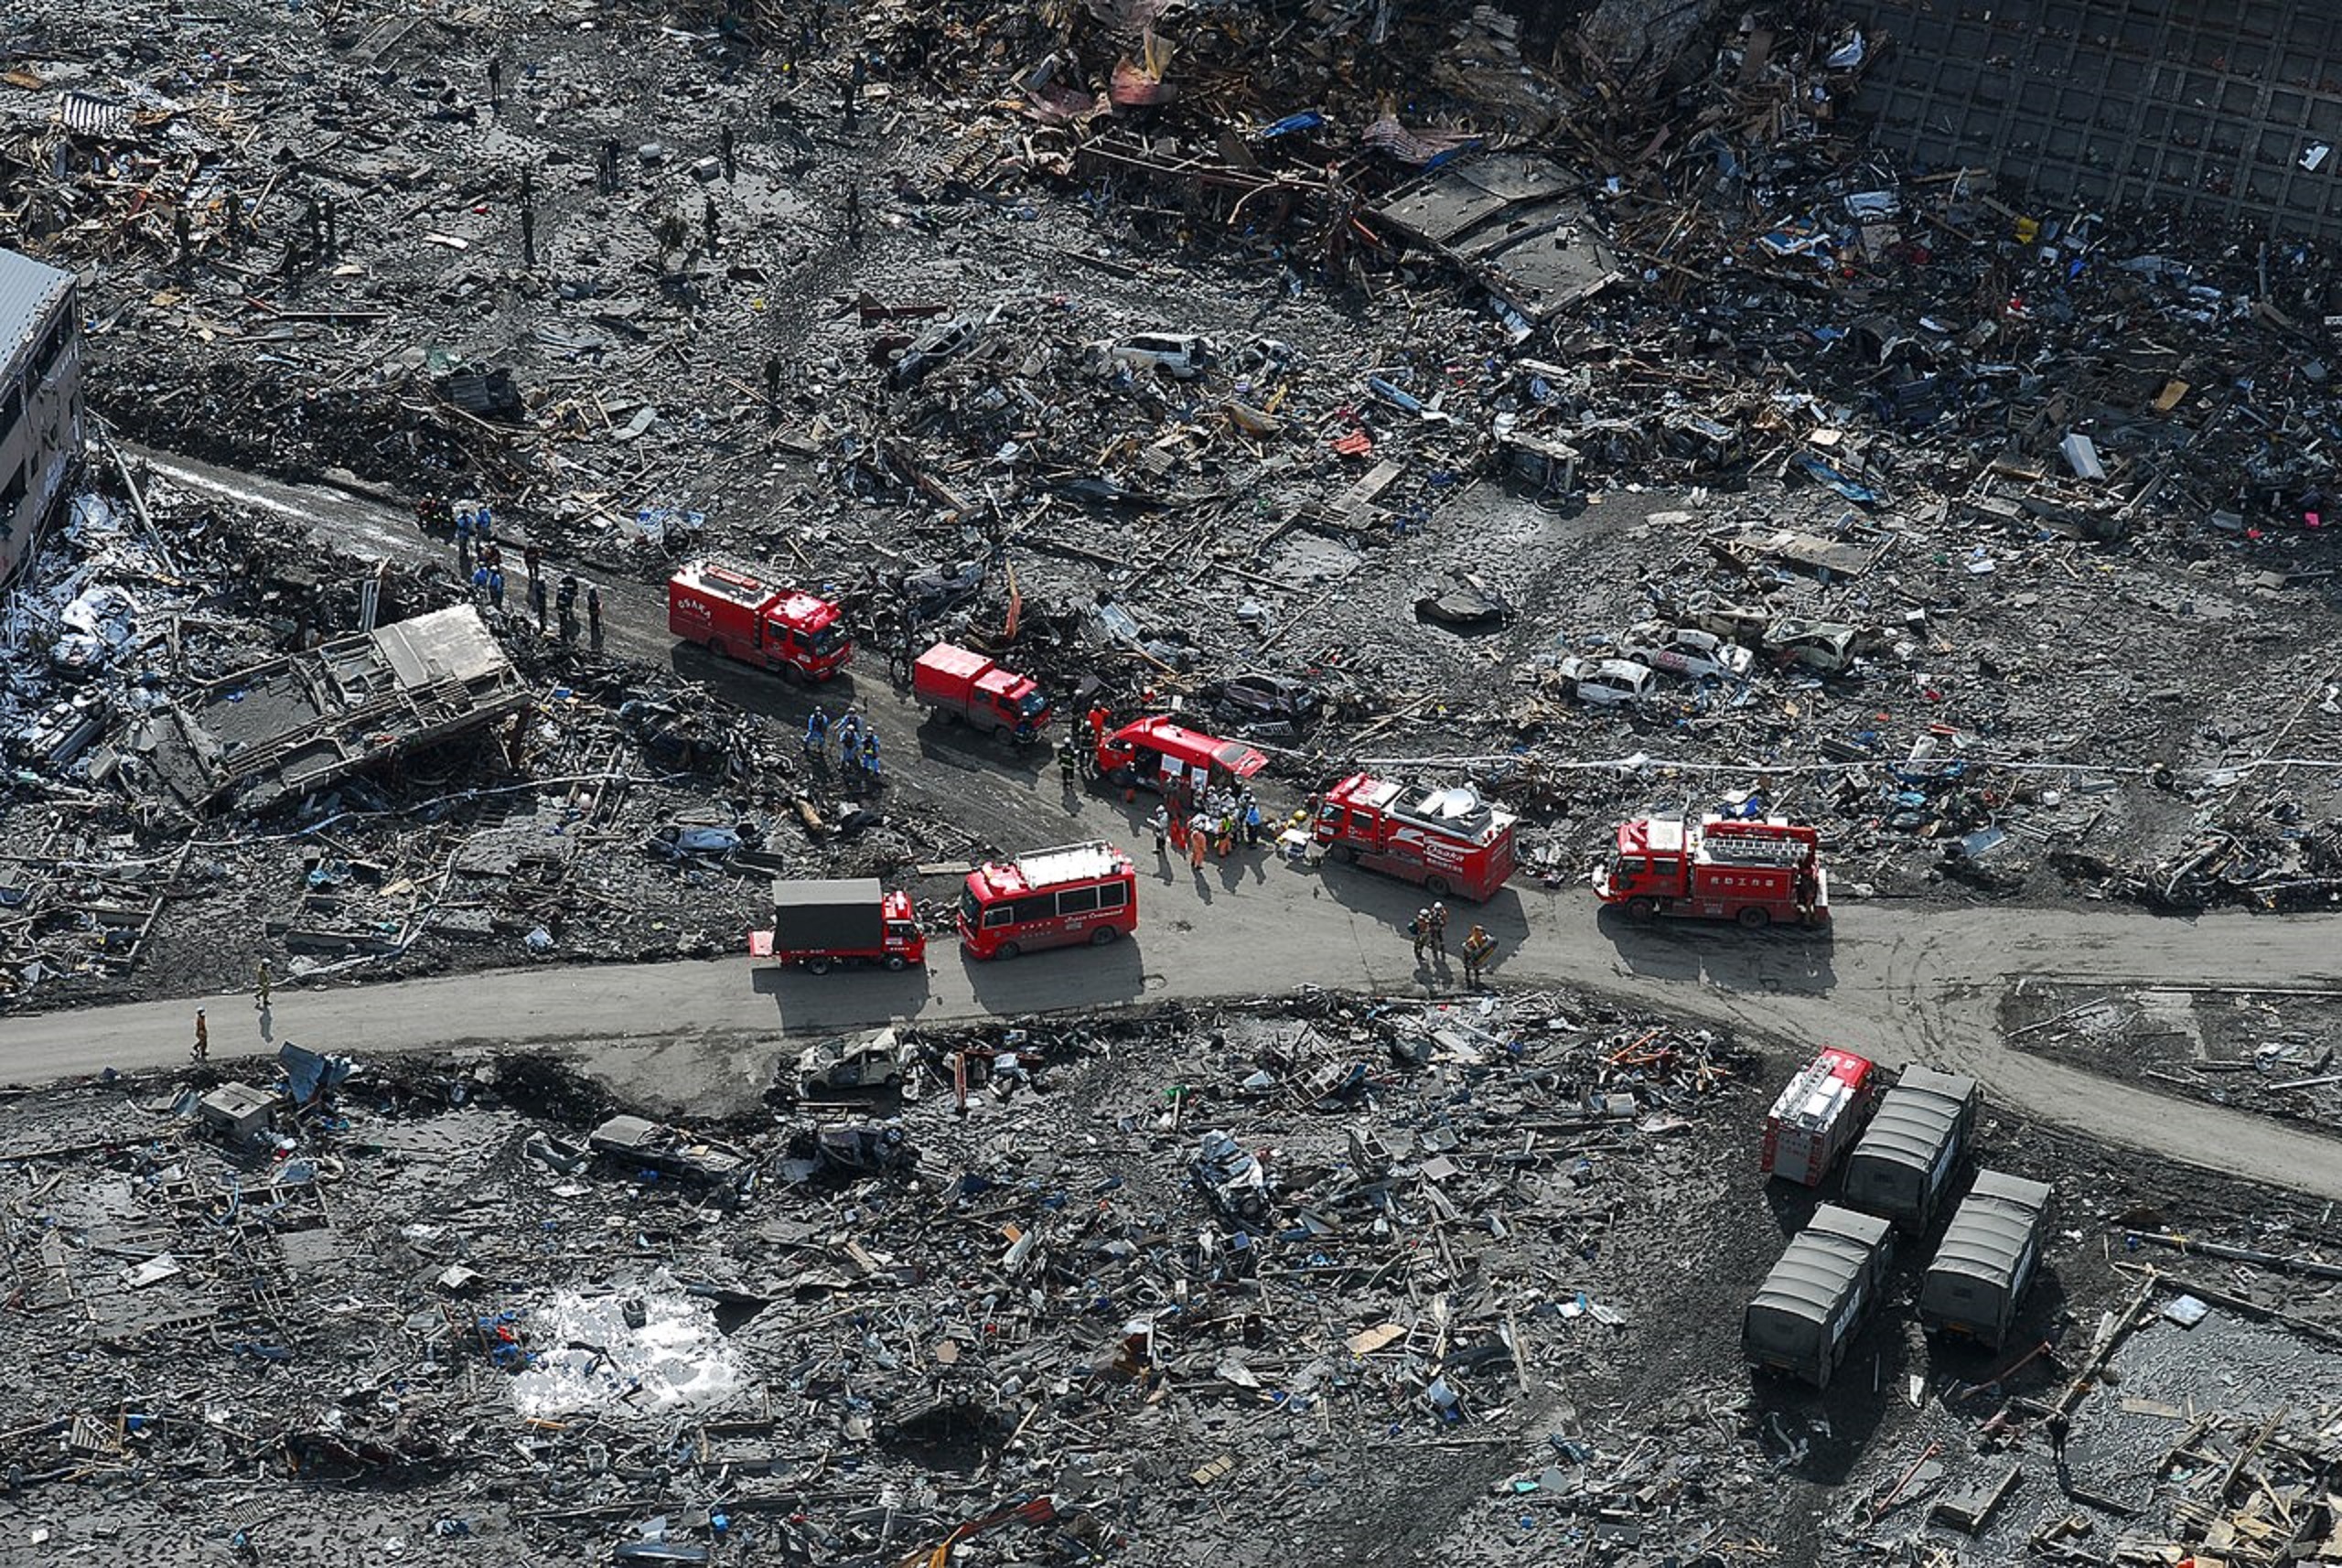 Les dégâts causés par le séisme et le tsunami de 2011 au Japon. © U.S. Navy photo by Mass Communication Specialist 3rd Class Dylan McCord, domaine public, Wikimedia Commons